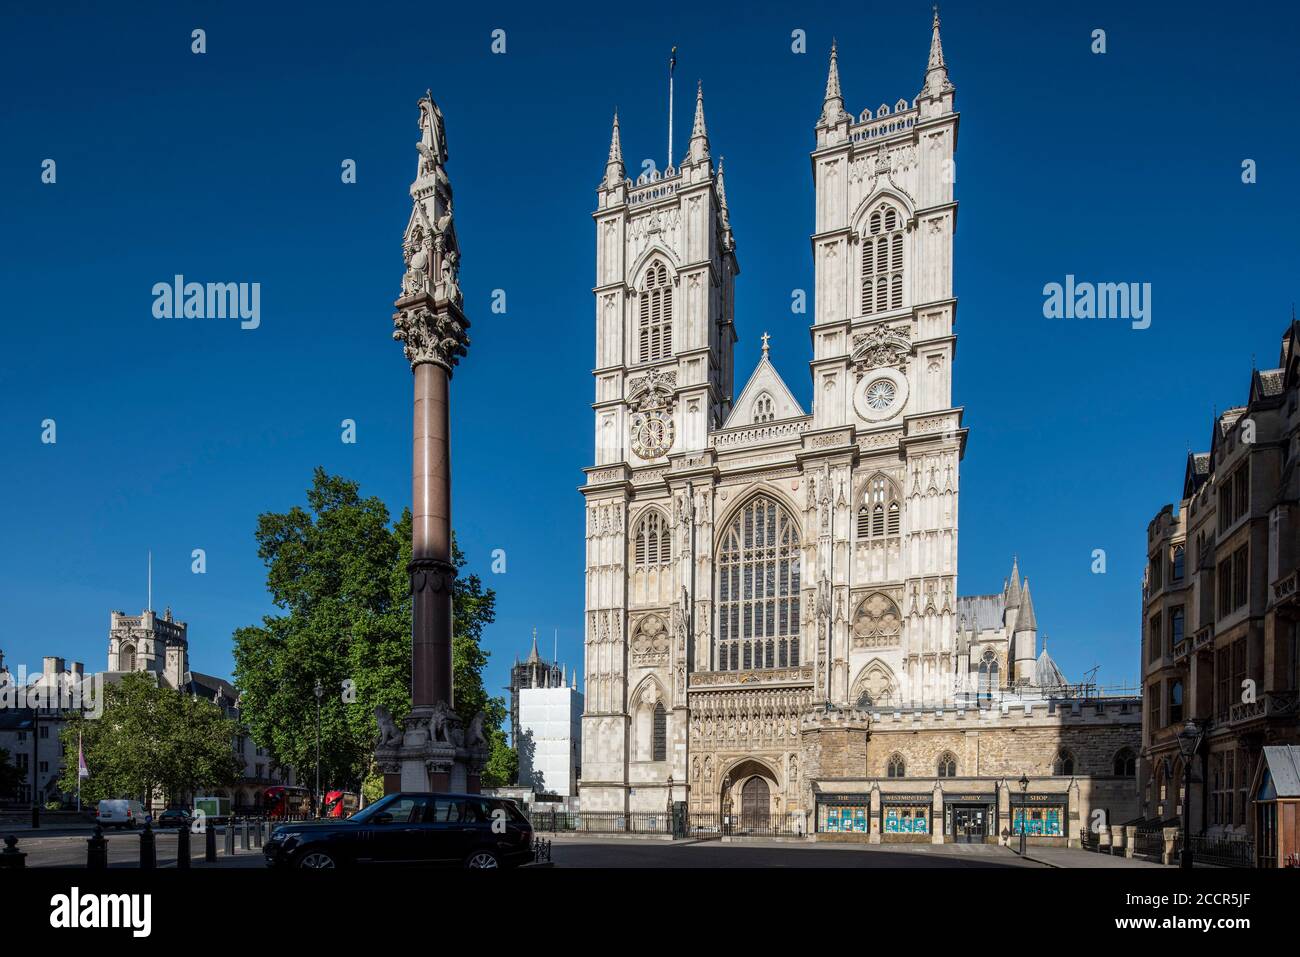 Vista leggermente obliqua della torre occidentale da sud-ovest con Crimea e Indian Mutiny Memorial visibili. Westminster Abbey, Westminster, Regno Unito. Foto Stock